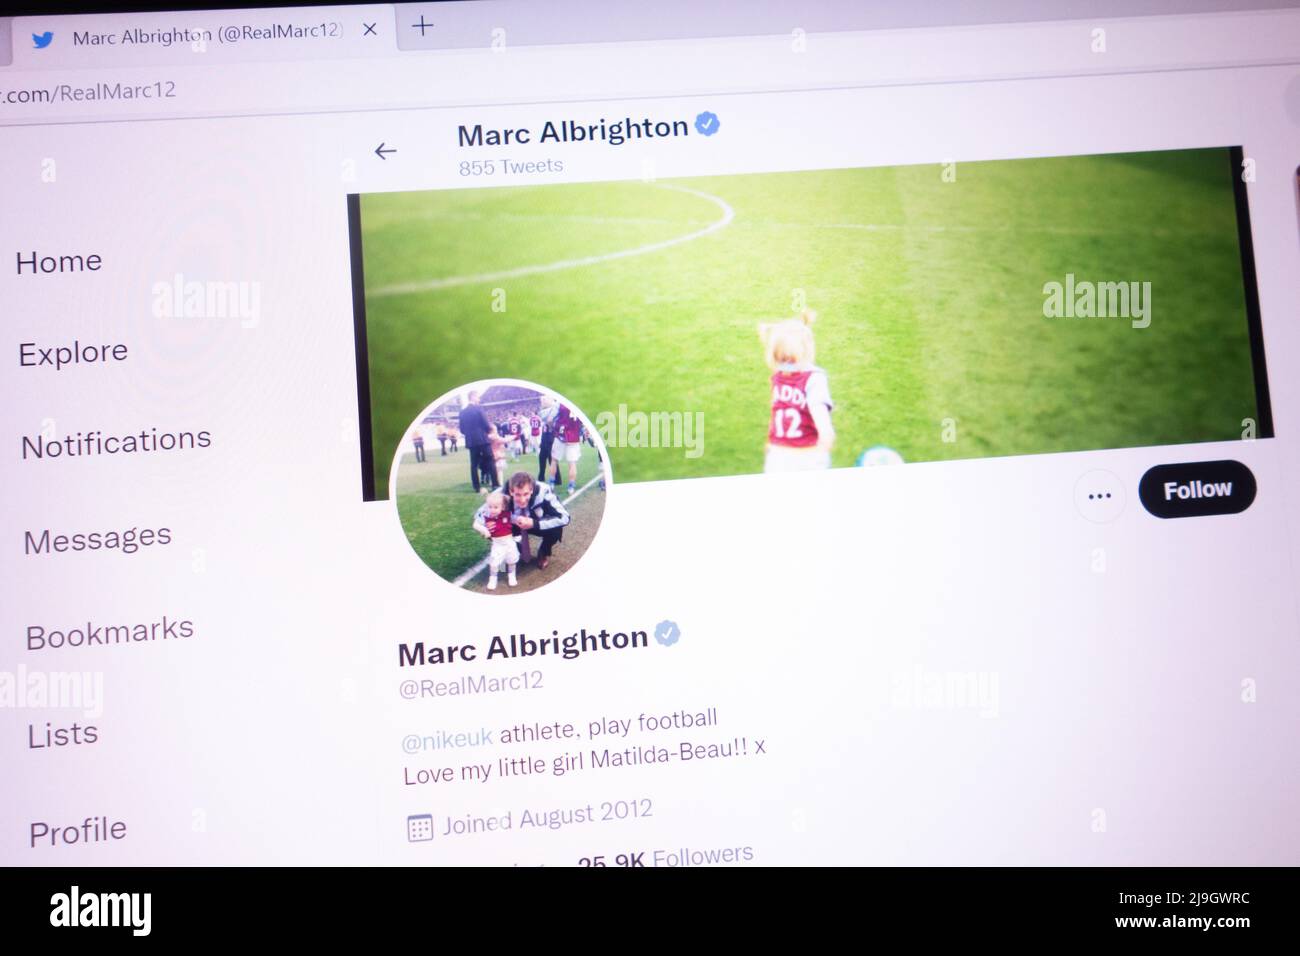 KONSKIE, POLONIA - 21 maggio 2022: Account Twitter ufficiale Marc Albrighton visualizzato sullo schermo del laptop Foto Stock